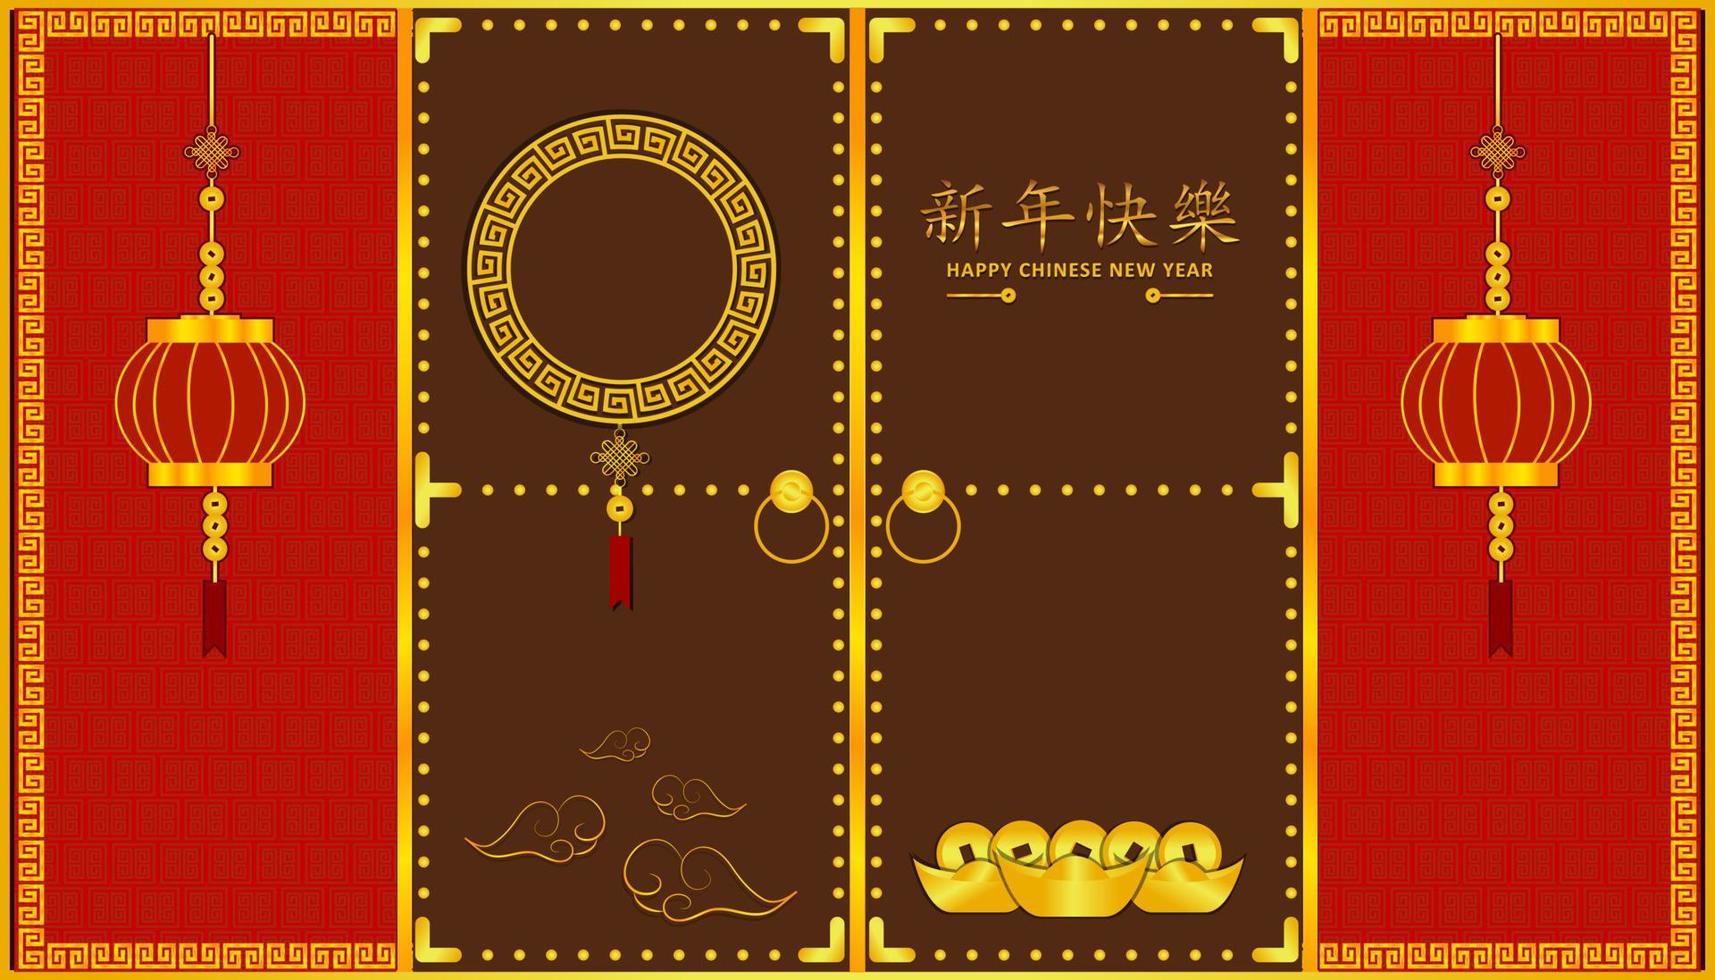 gott nytt kinesiskt år. Xin nian kual le karaktärer för cny festival. knacka på dörren för att öppna rik tid med molnlykta guldmynt och pengar. mönster bakgrund design kort affisch. asiatisk semester. vektor